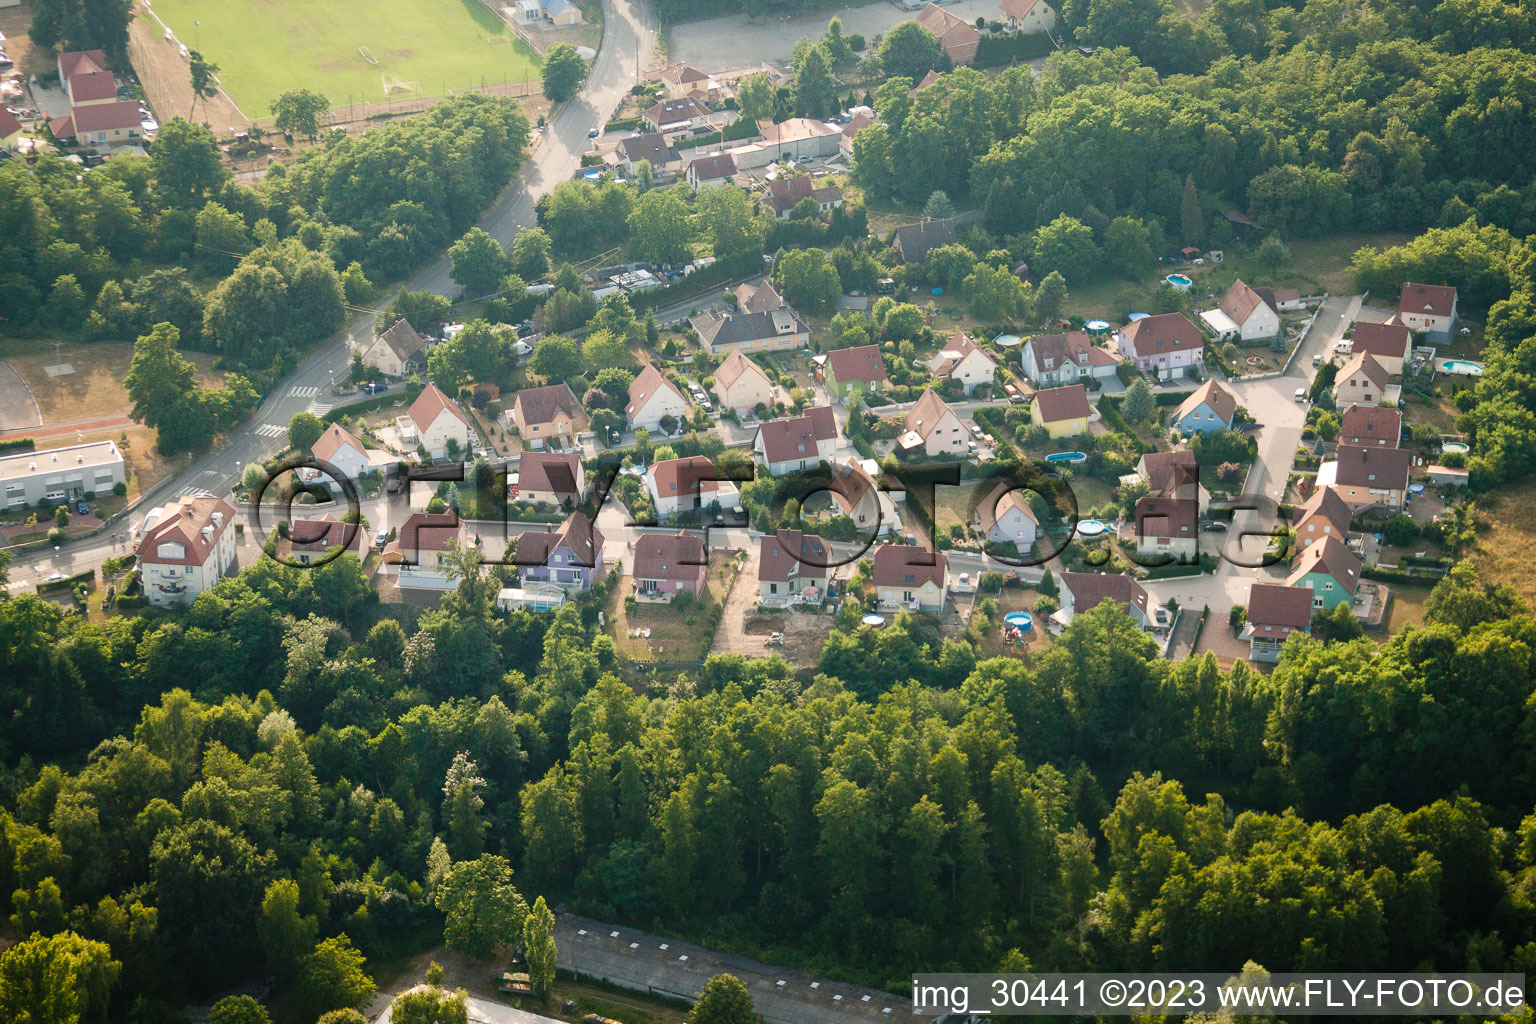 Oberhoffen-sur-Moder dans le département Bas Rhin, France vu d'un drone